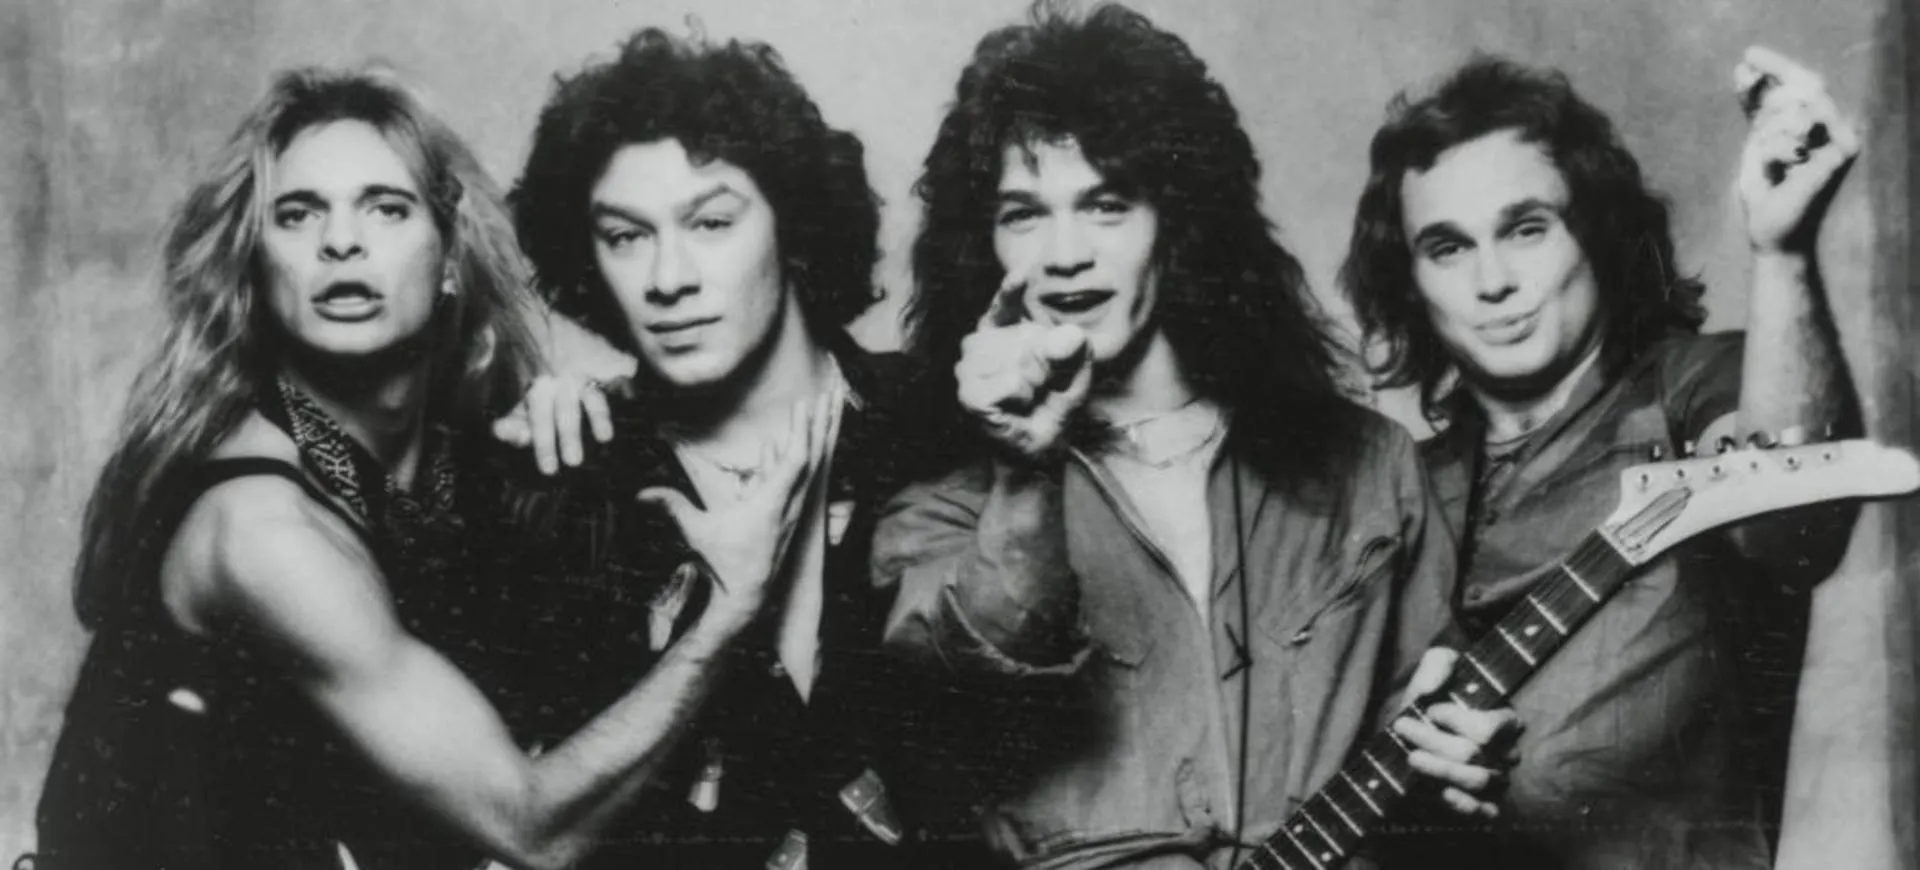 美国摇滚乐队Van Halen(范·海伦)1978-2023年发行专辑、现场辑、EP、单曲合集[无损FLAC/20.7GB]百度云盘打包下载 影音资源 第2张